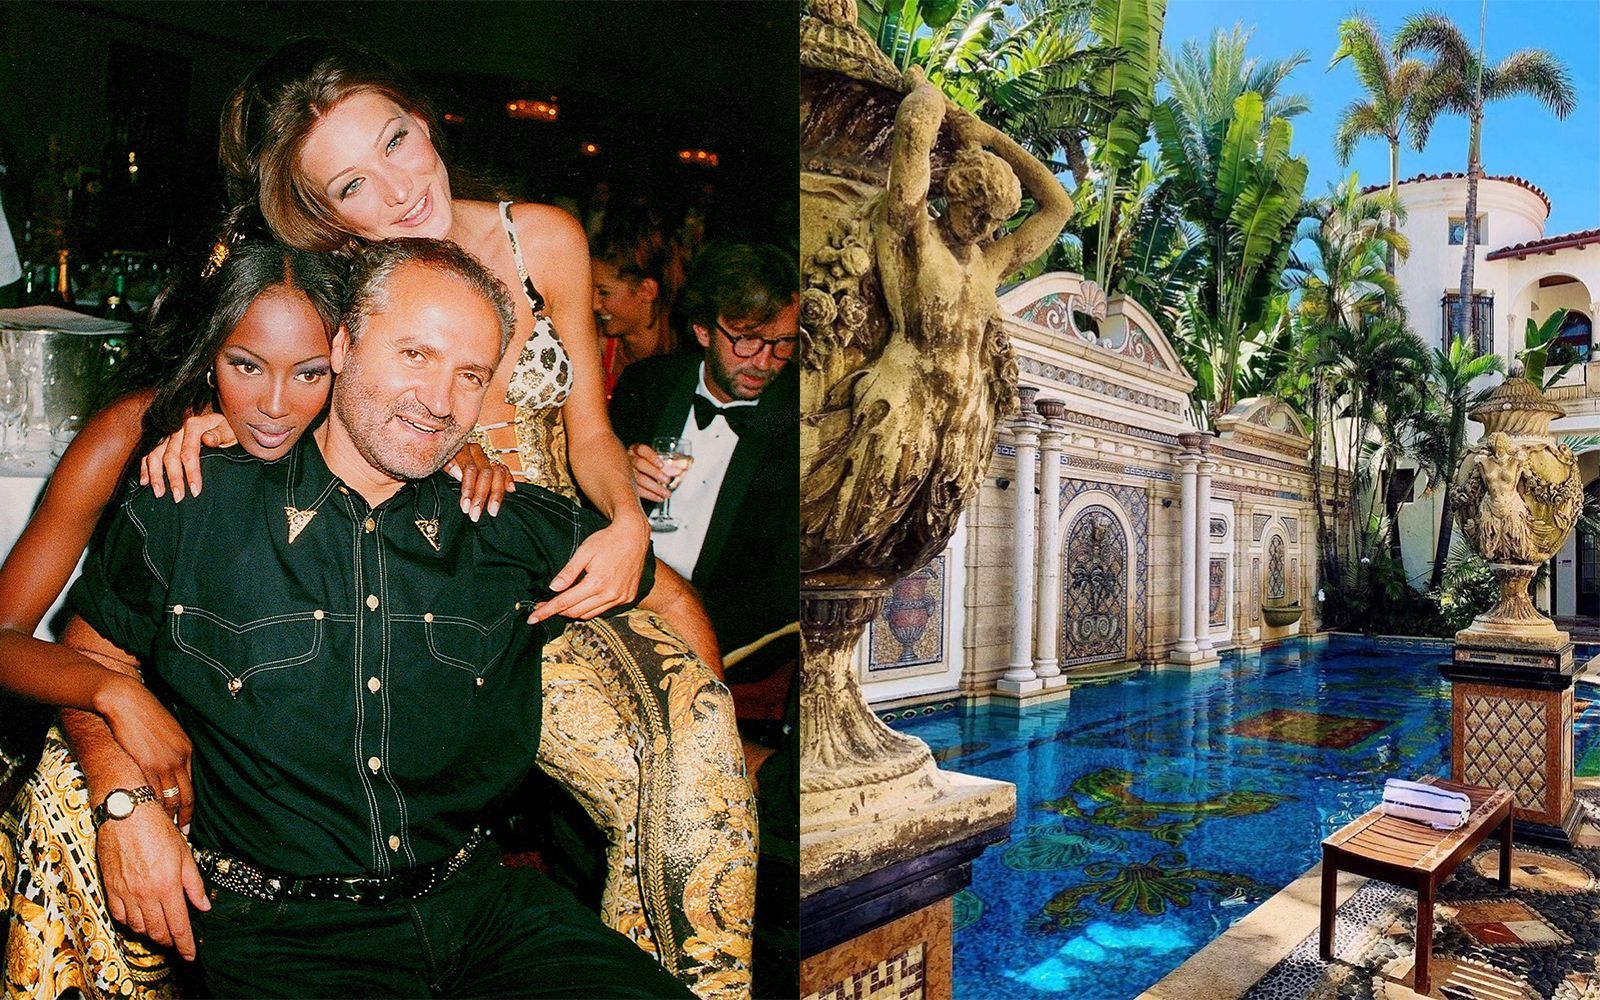 Fashion locations: Gianni Versace's Miami Villa